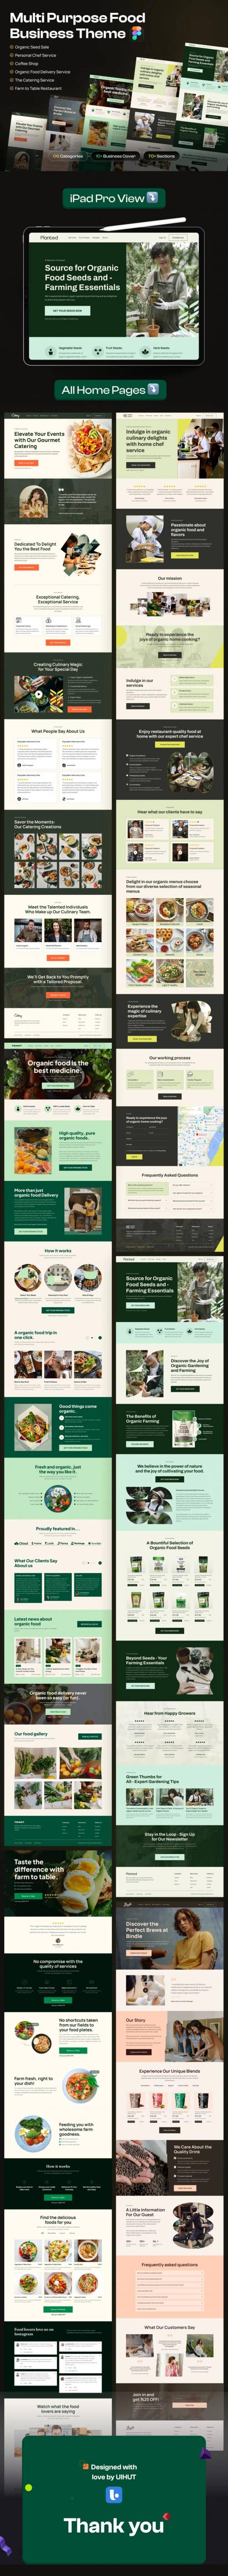 UIHut - Multi-Purpose Food Business Web Templates - 25789